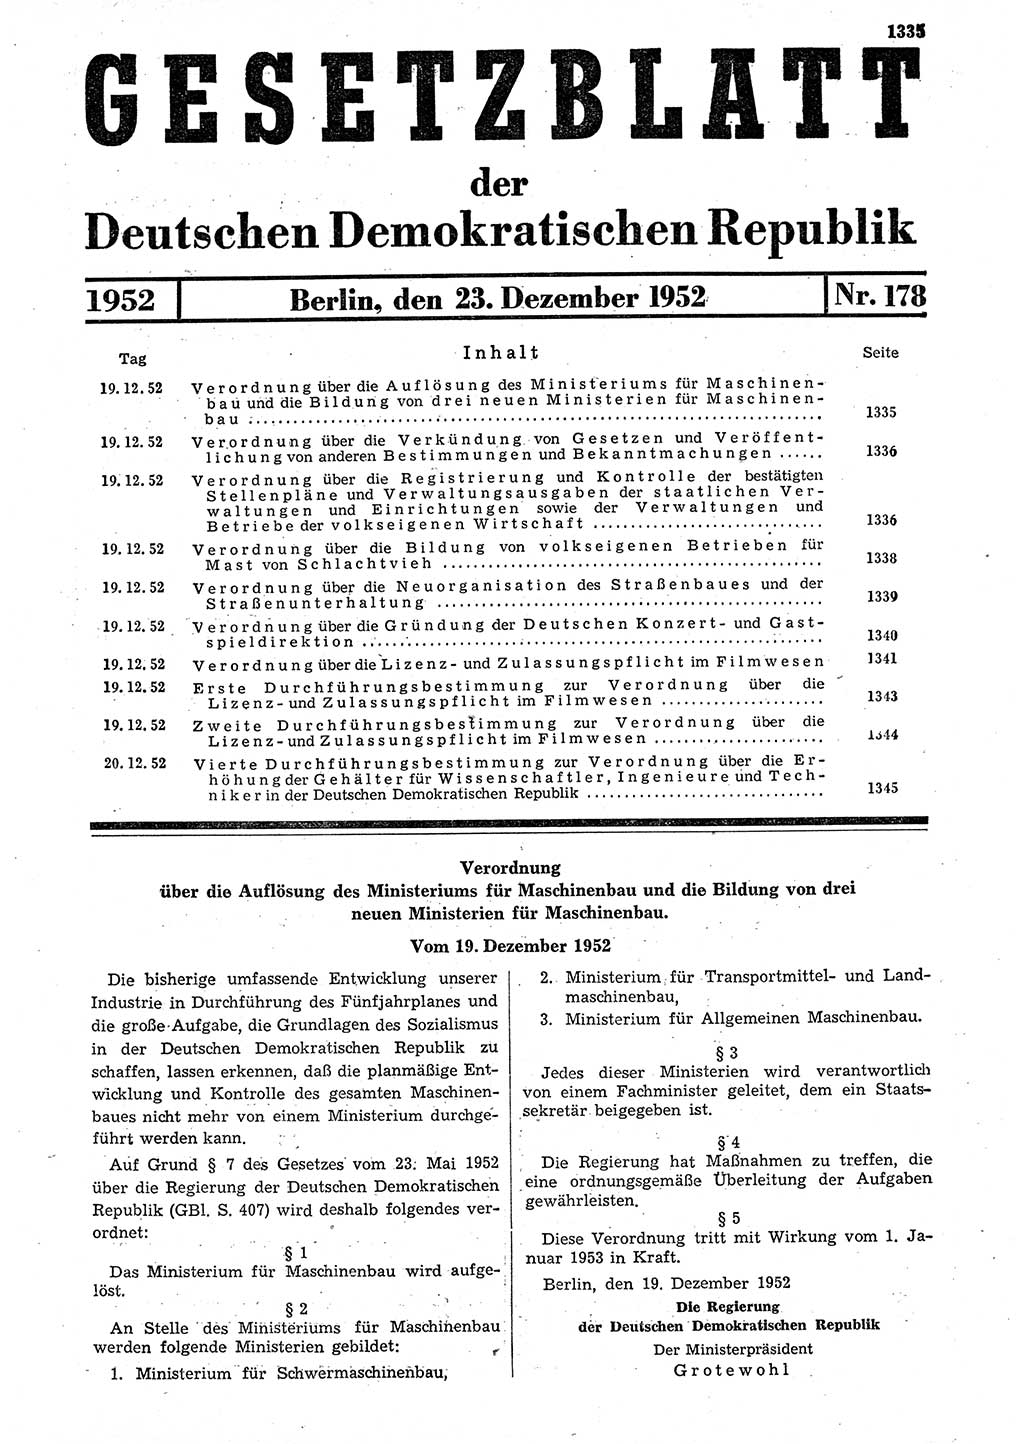 Gesetzblatt (GBl.) der Deutschen Demokratischen Republik (DDR) 1952, Seite 1335 (GBl. DDR 1952, S. 1335)